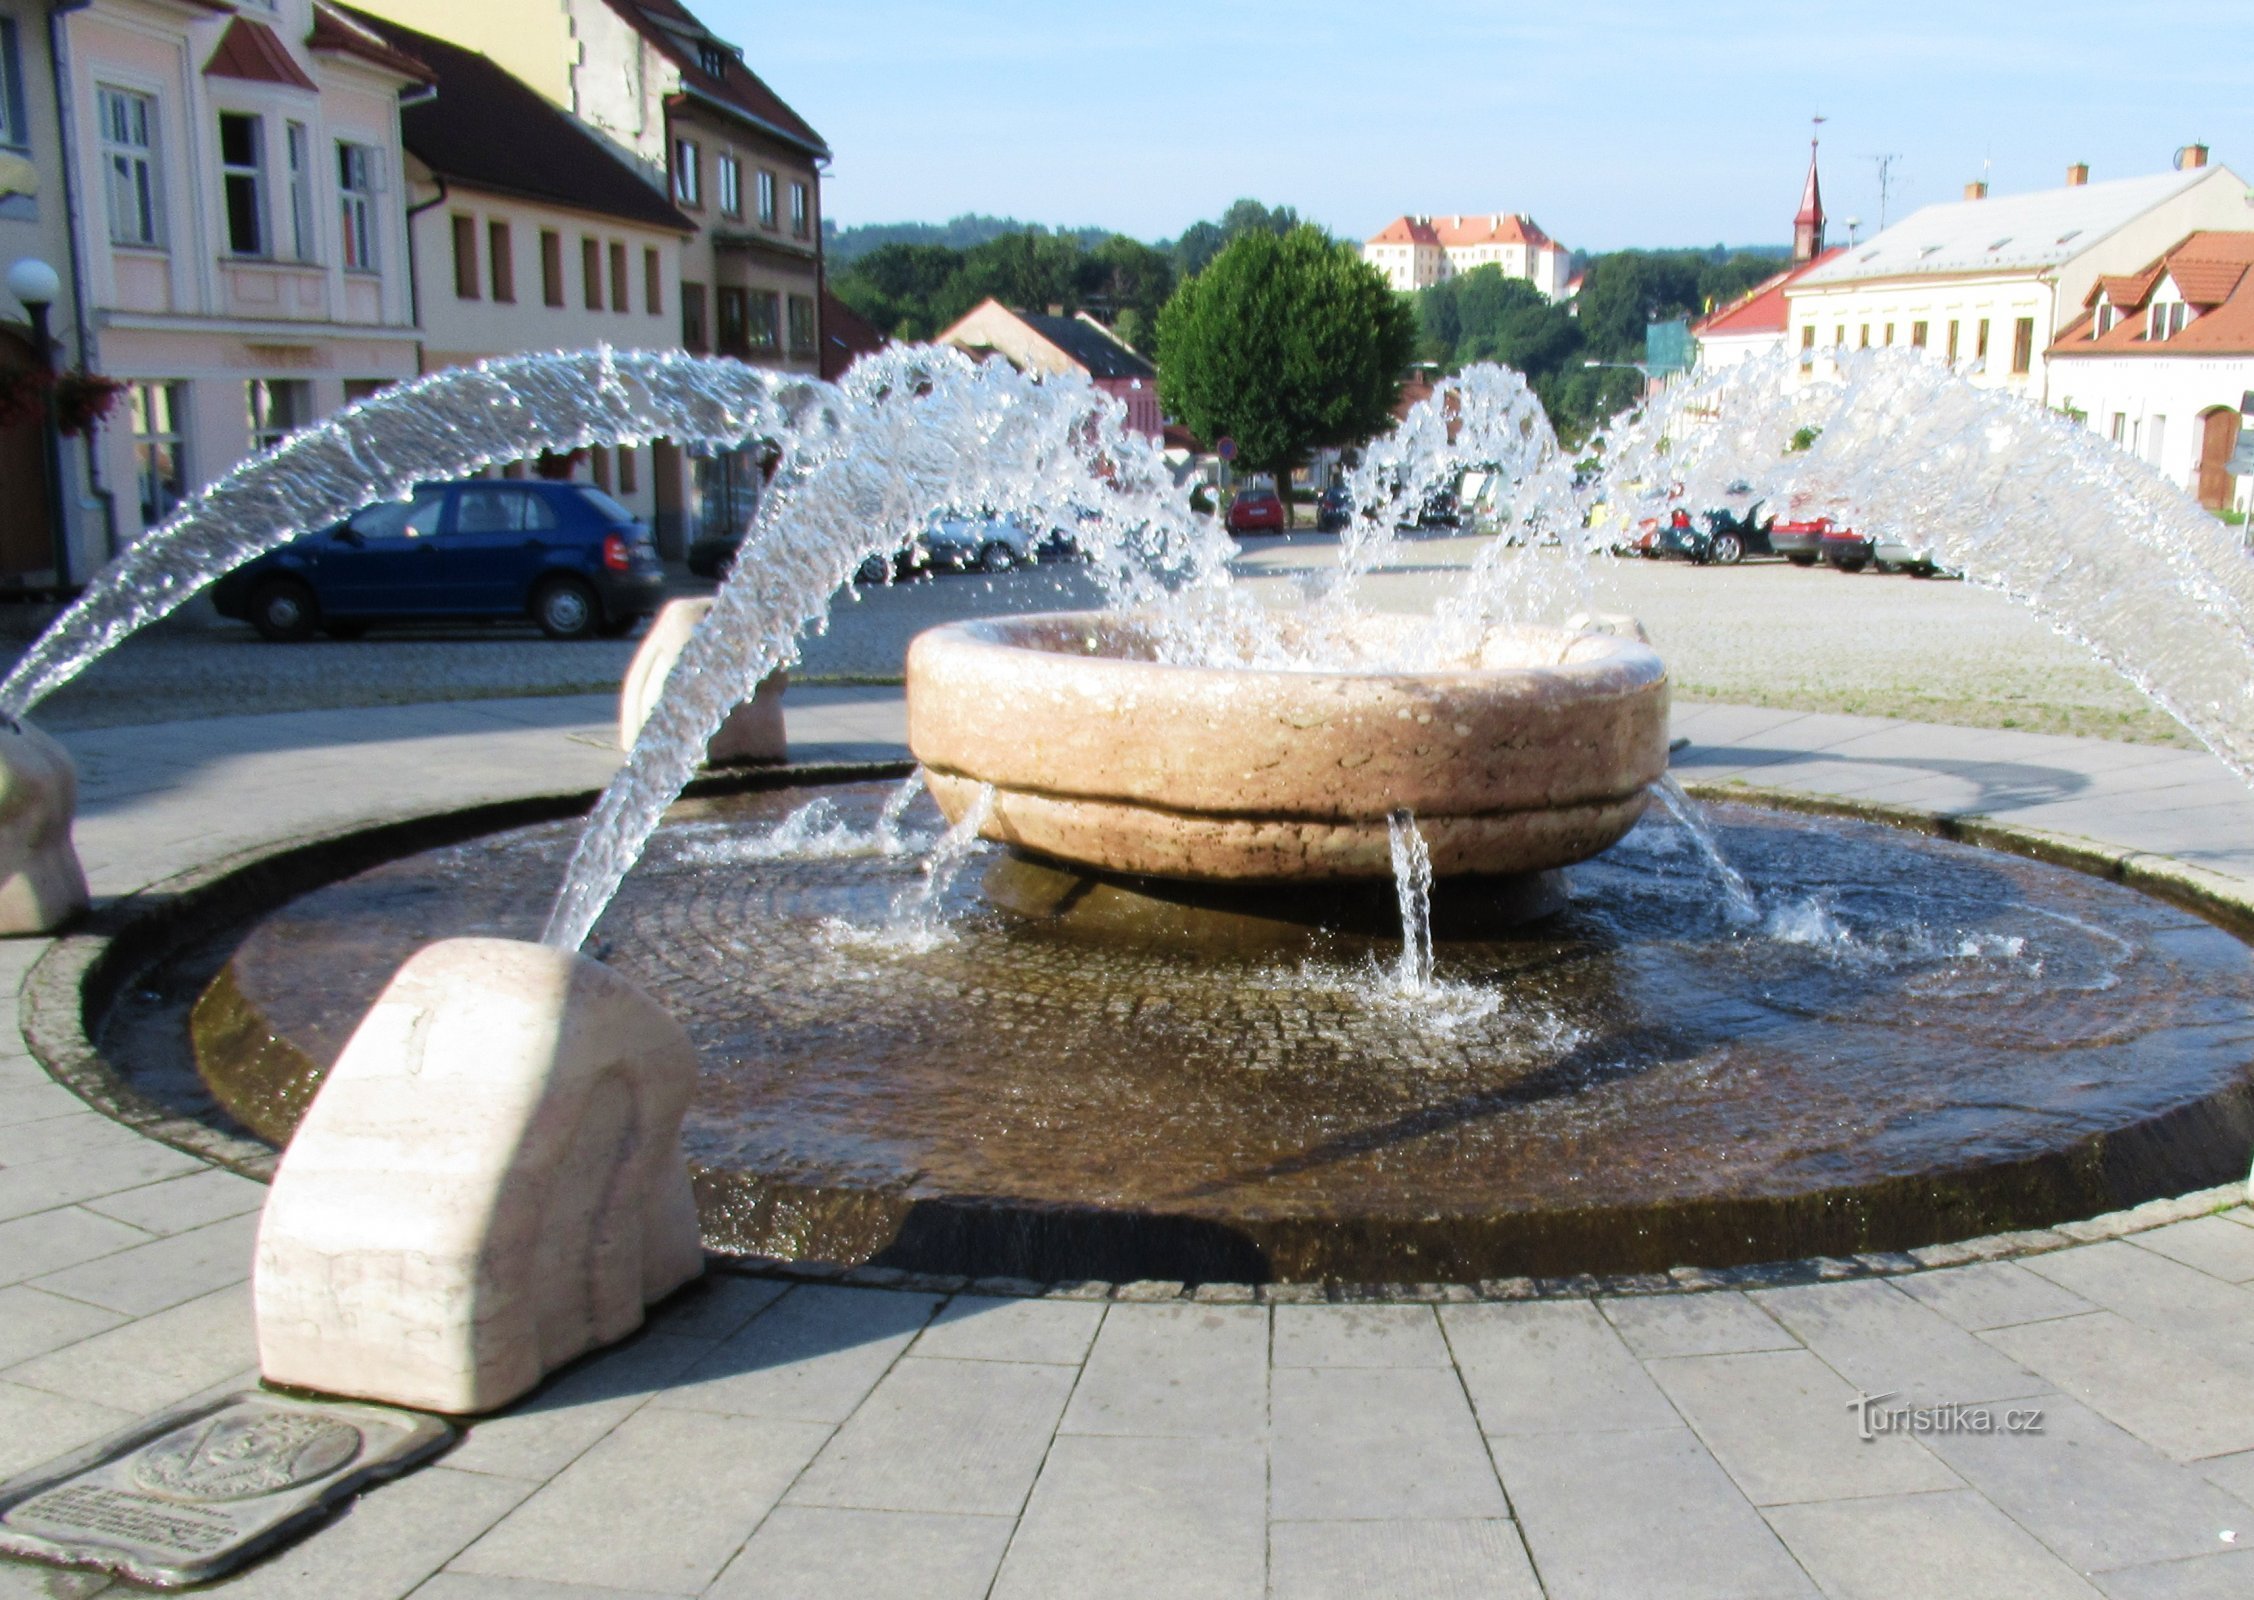 Uma fonte não convencional na Praça King George em Kunštát